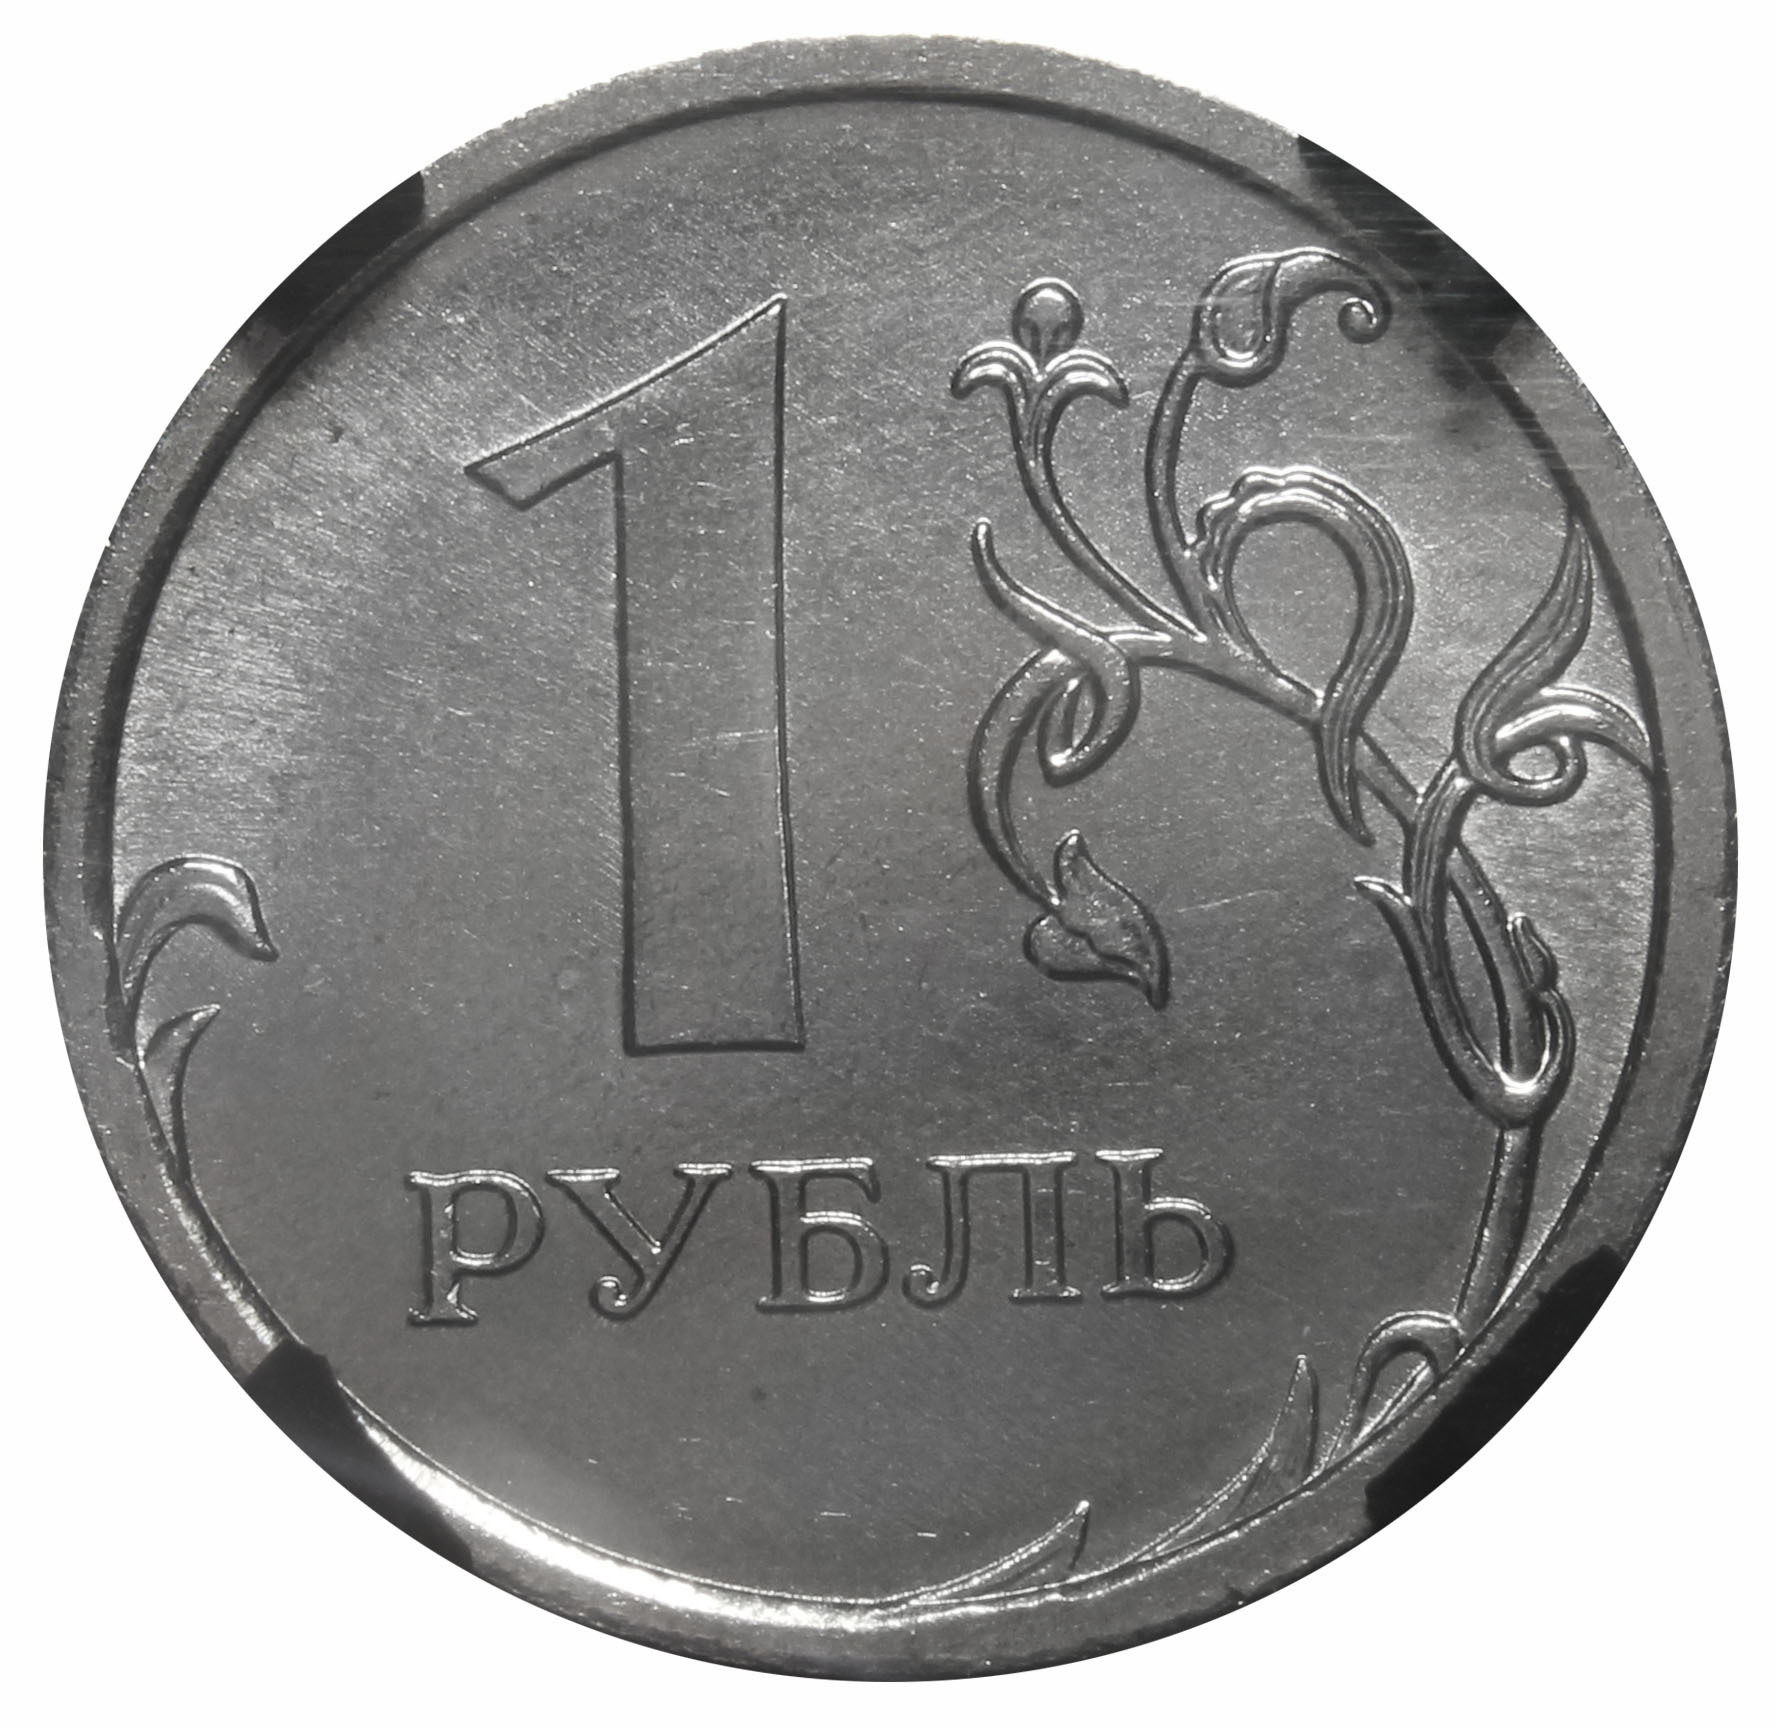 Рубль пал. 1 Рубль. Монеты рубли. Монета 1 руб. Изображение монеты 1 рубль.